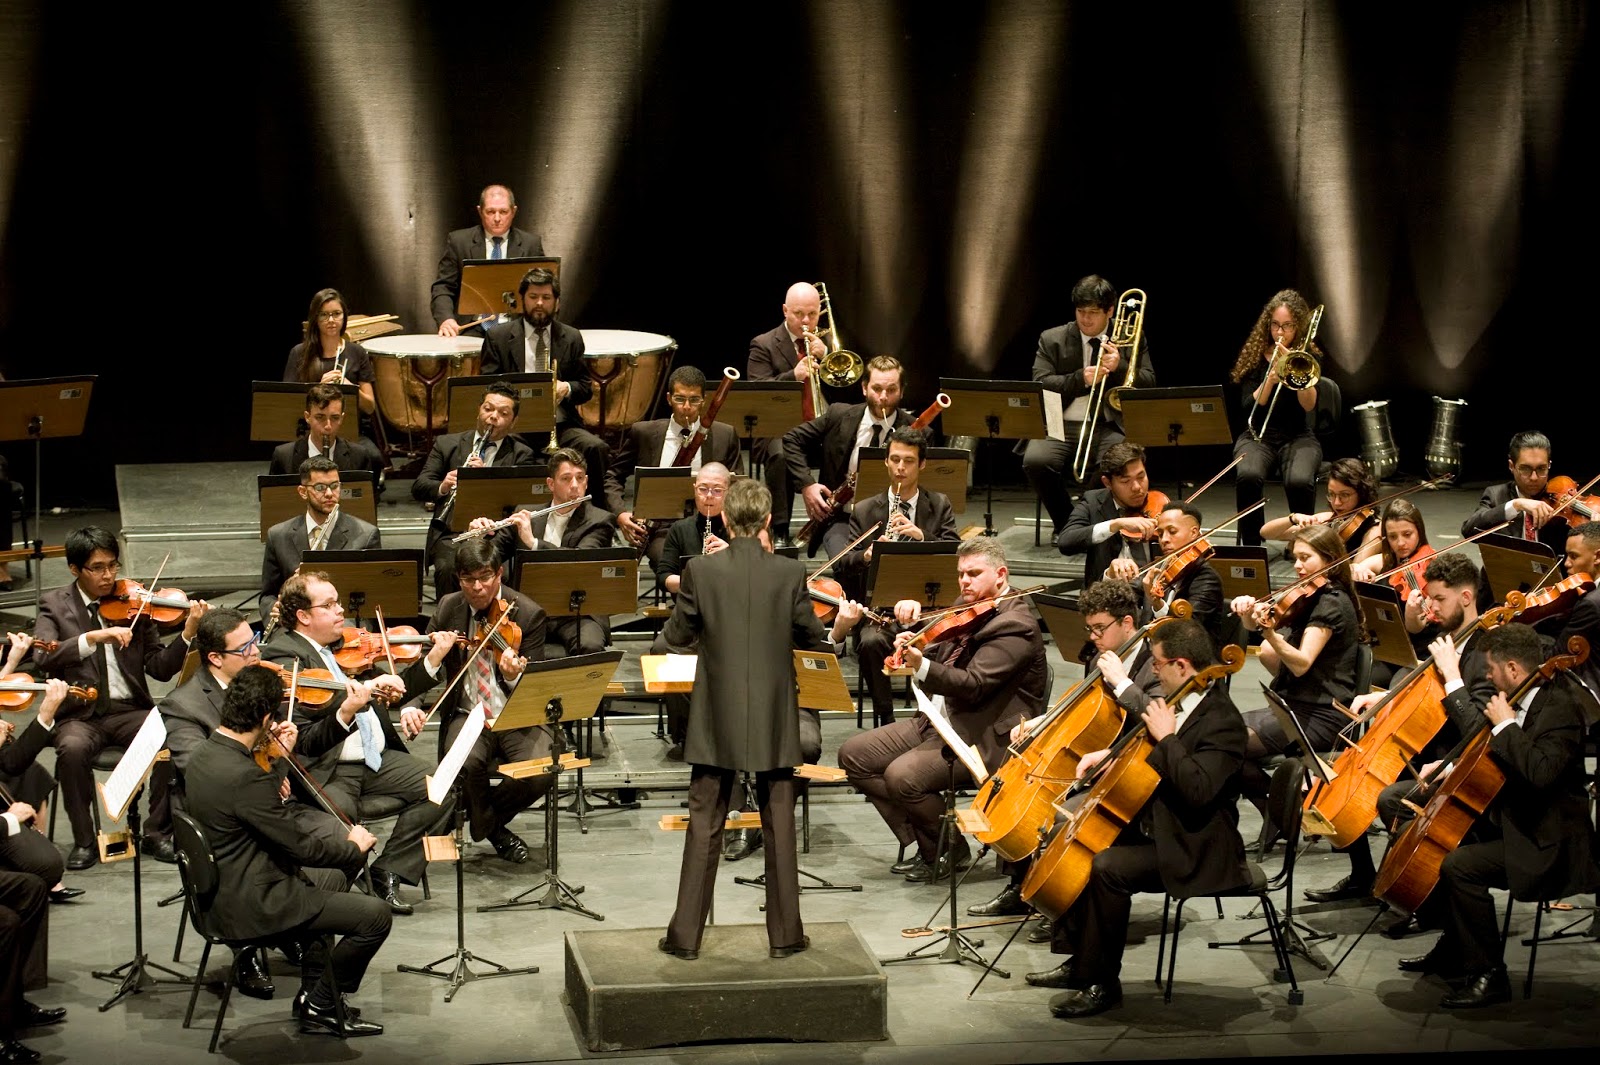 SciELO - Brasil - Avaliação fisioterapêutica nos músicos de uma orquestra  filarmônica Avaliação fisioterapêutica nos músicos de uma orquestra  filarmônica